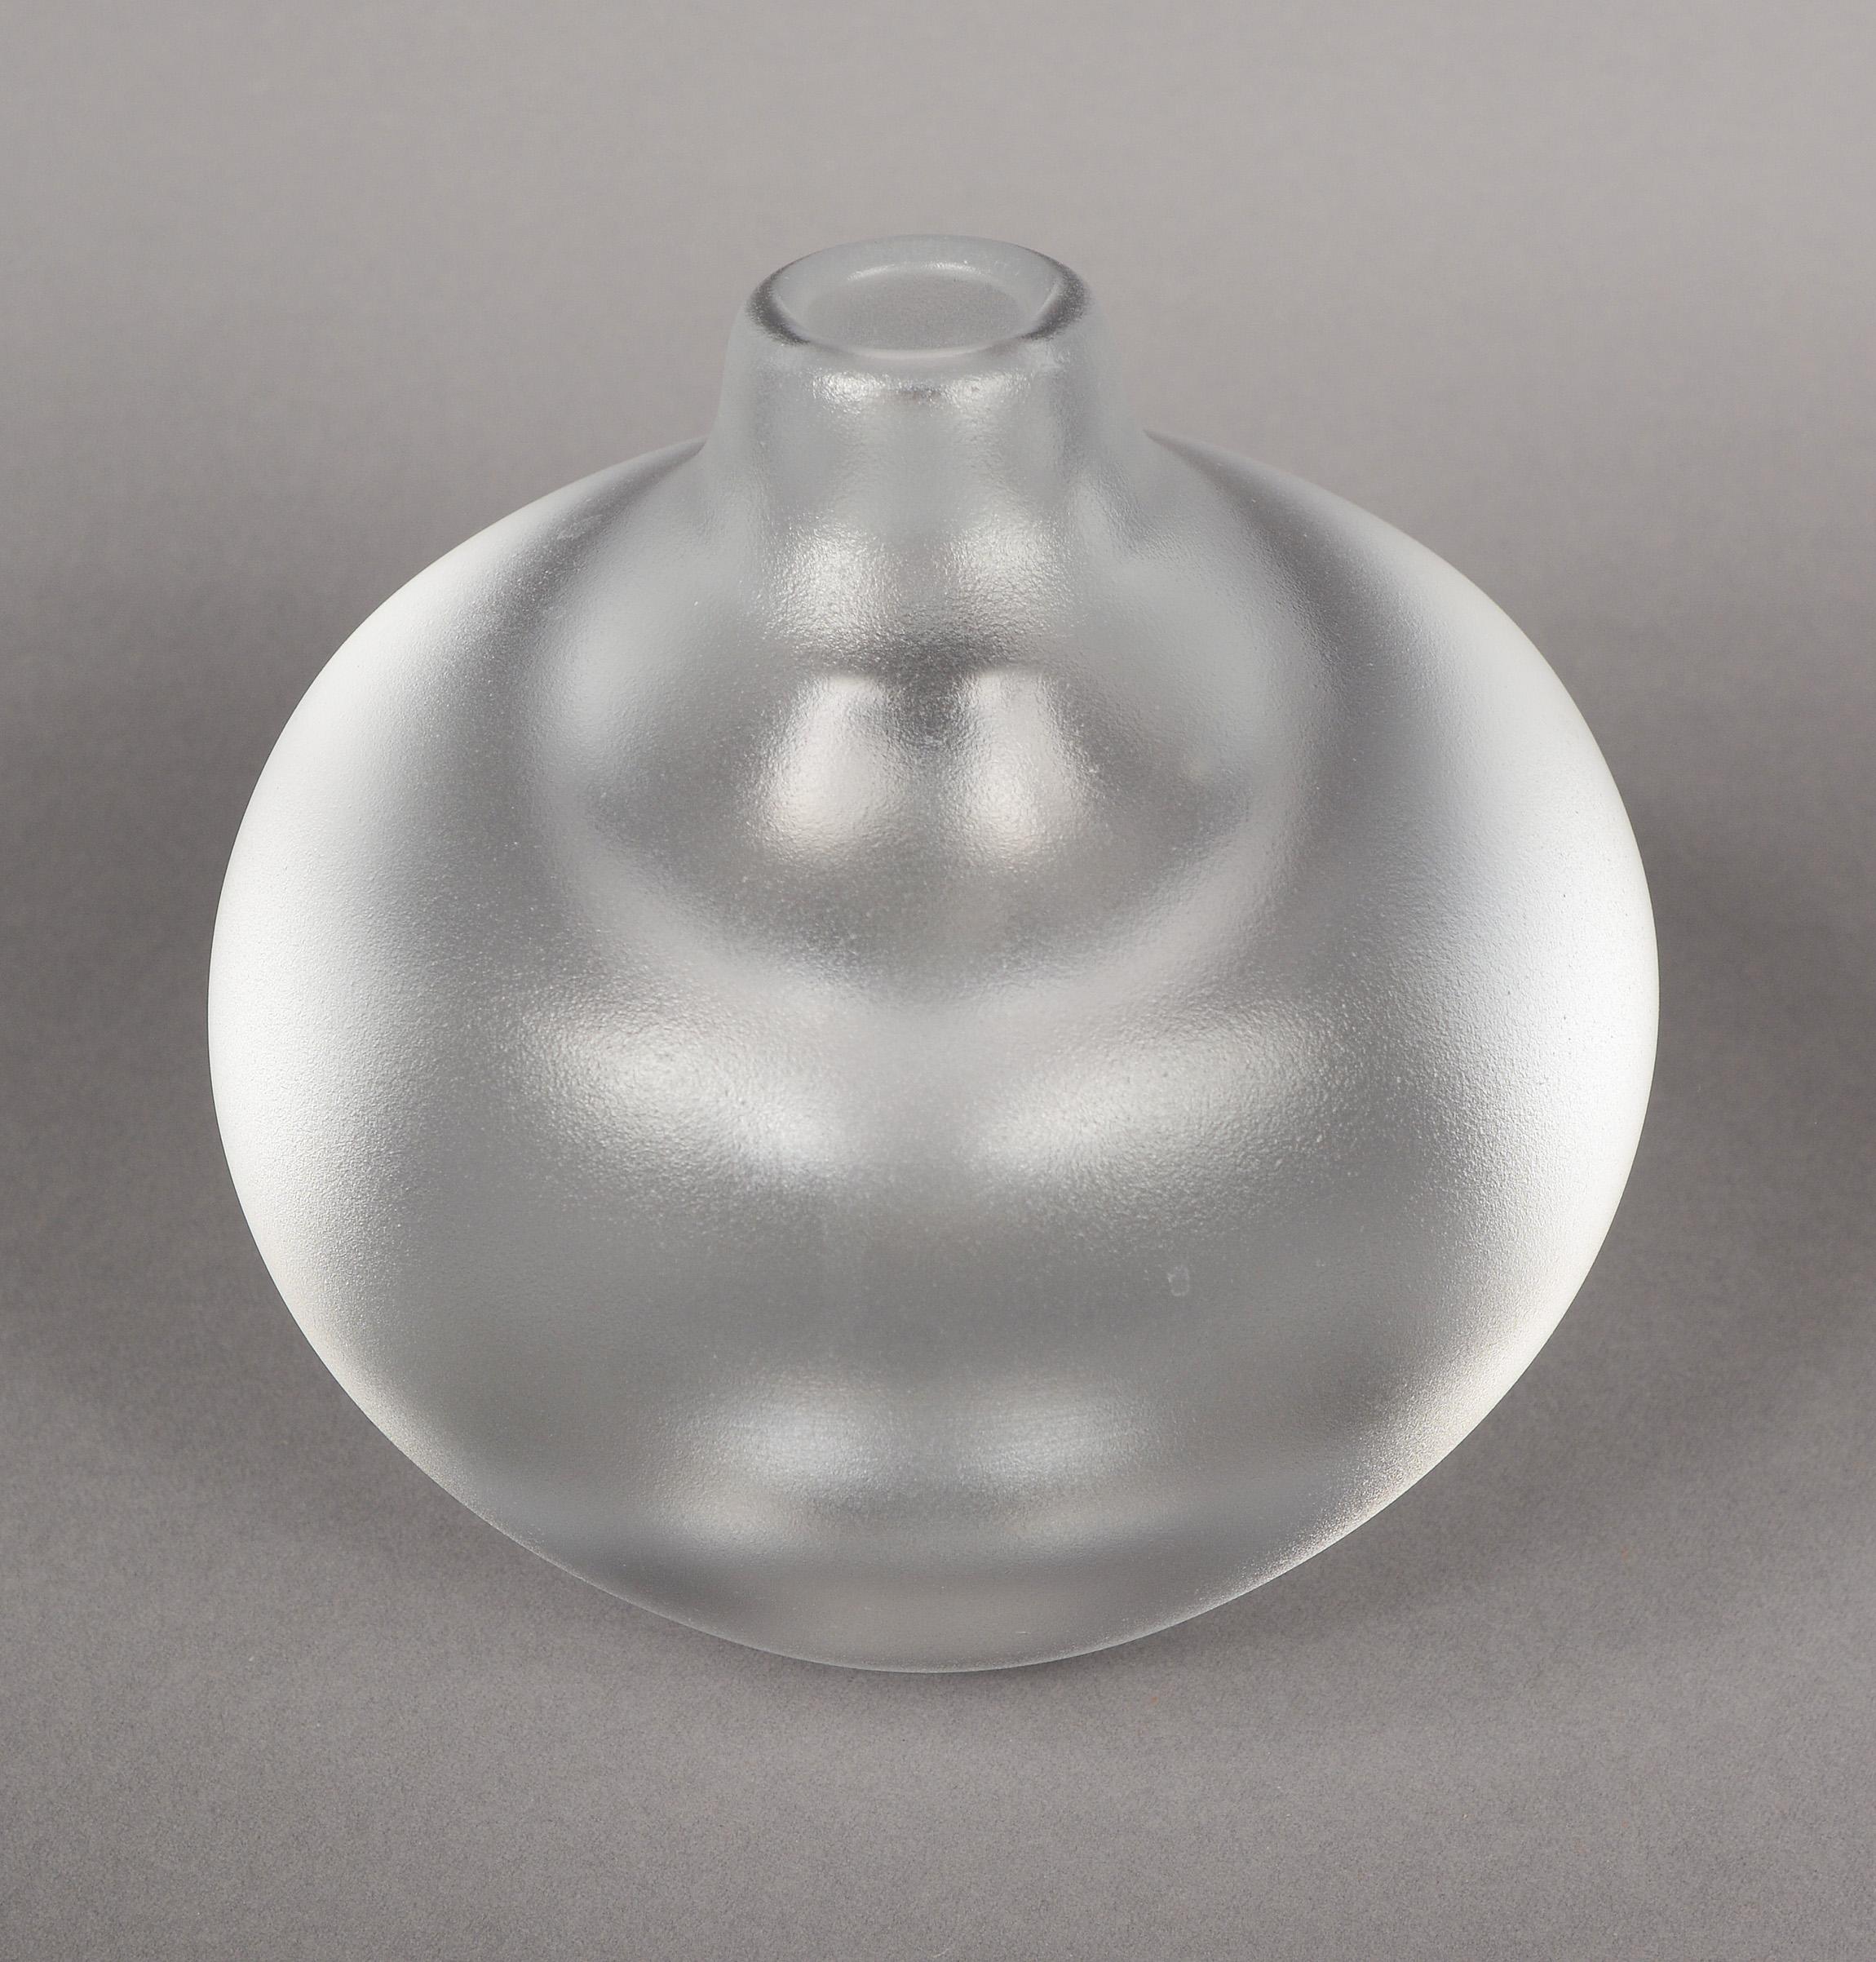 Vase de la collection Kosta Royal Art conçue par Goran Warff. Ce vase a des parois très épaisses, une grande bulle interne dans le fond et un extérieur traité à l'acide. Tout cela crée un effet optique intéressant. Il y a une petite bosse sur le